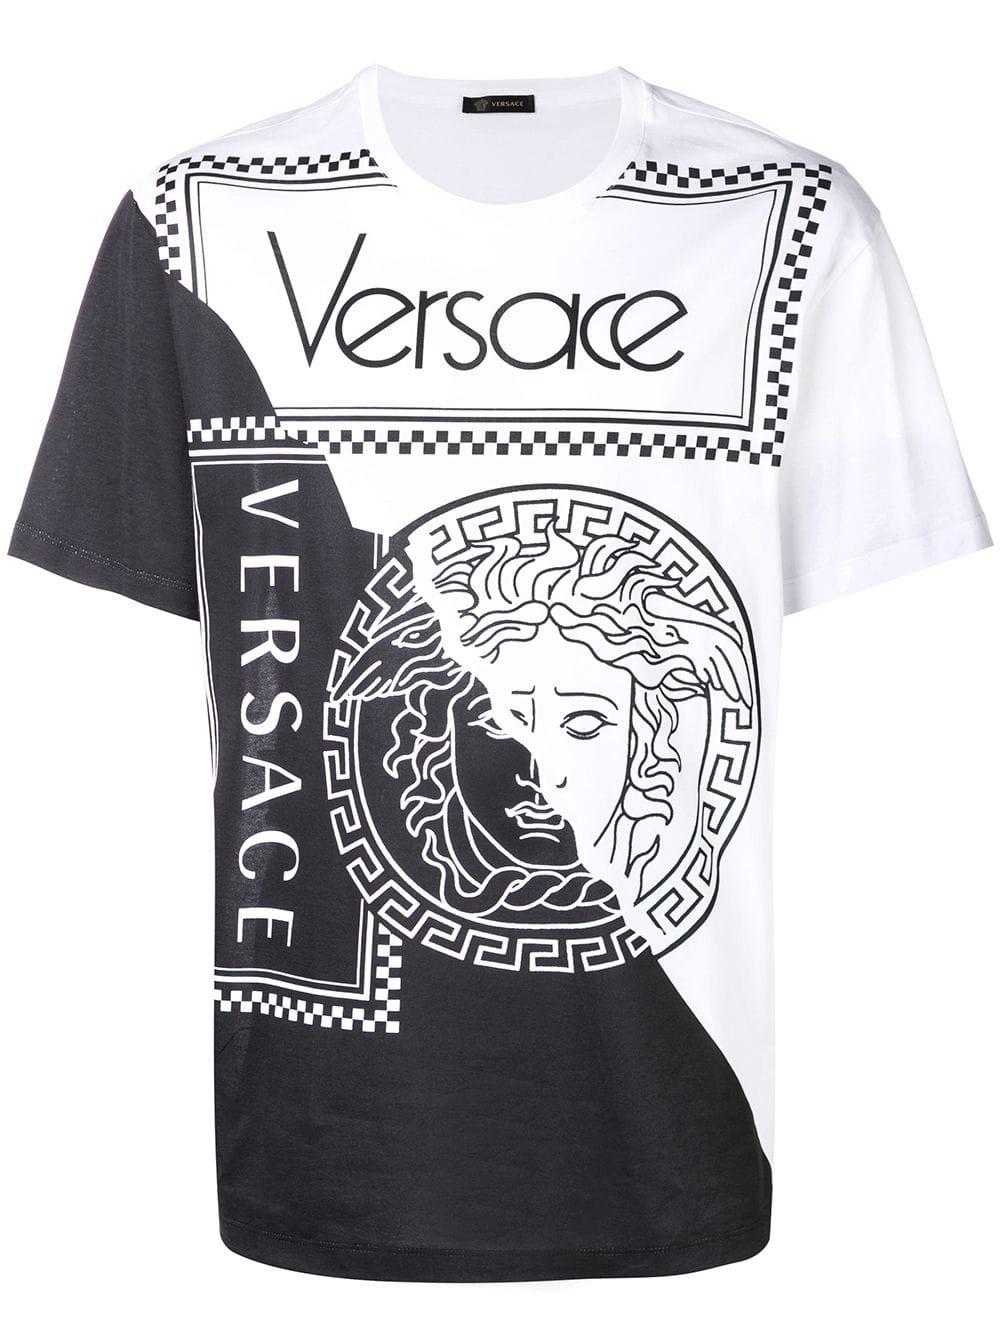 versace shirt black and white